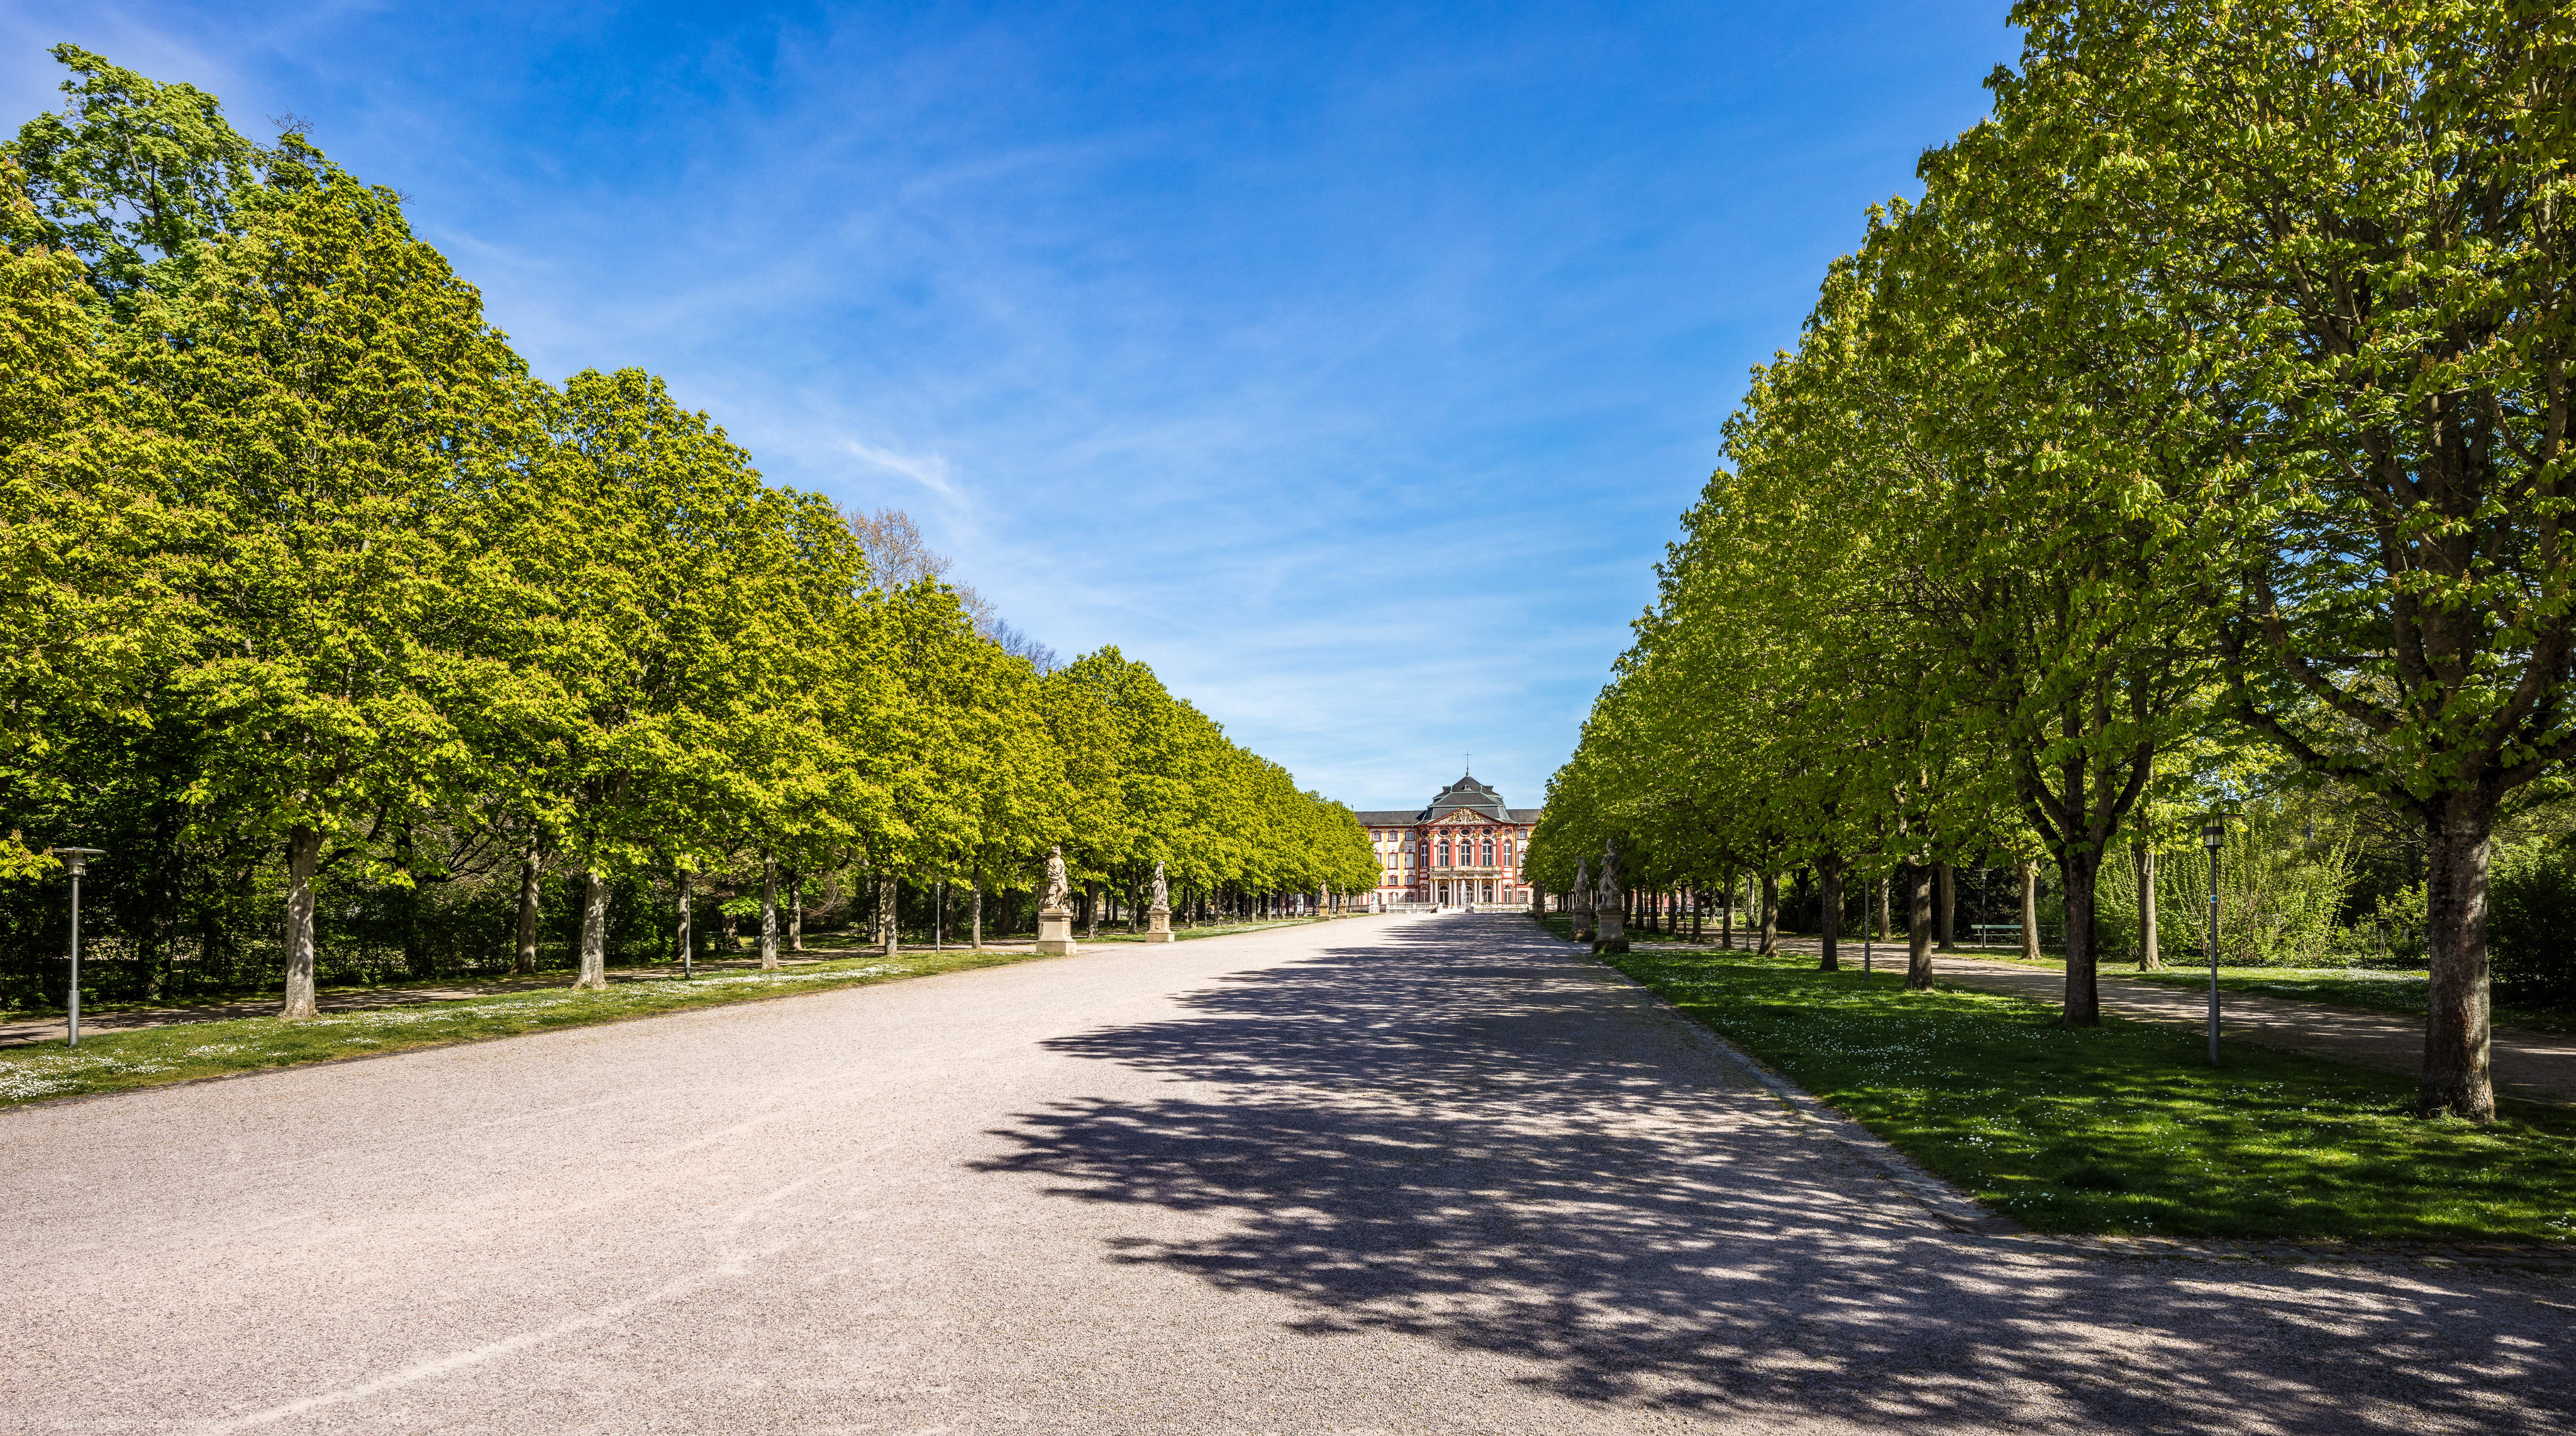 Schloss Bruchsal - Schlossgarten - Hauptachse / Mittlere Ost-West-Achse - Von Westen - Blick auf die Hauptachse und die Kastanienbäume (aufgenommen im April 2020, am Nachmittag)